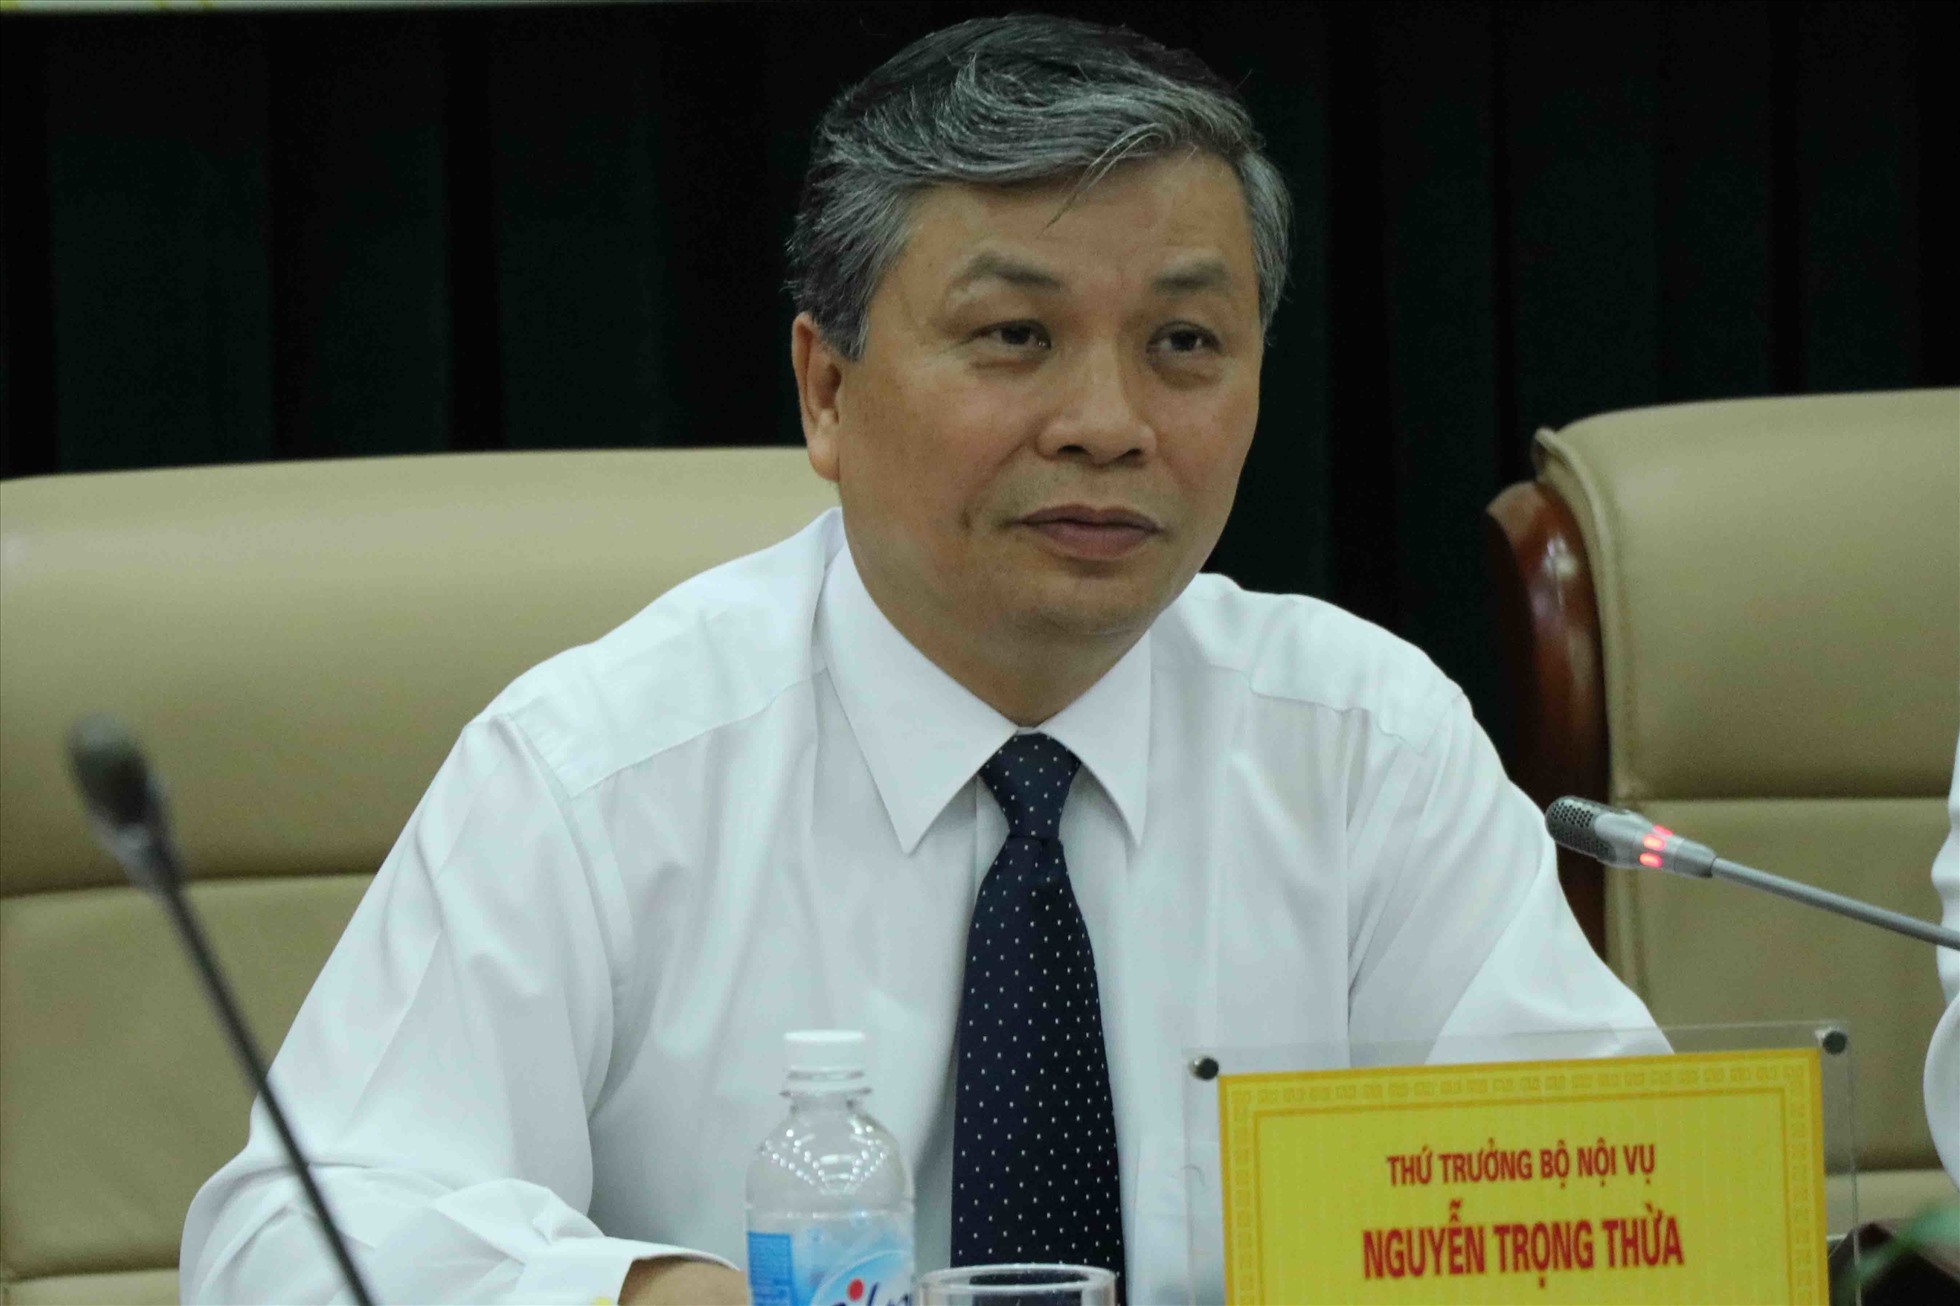 Thứ trưởng Bộ Nội vụ Nguyễn Trọng Thừa. Ảnh: Thu Hằng